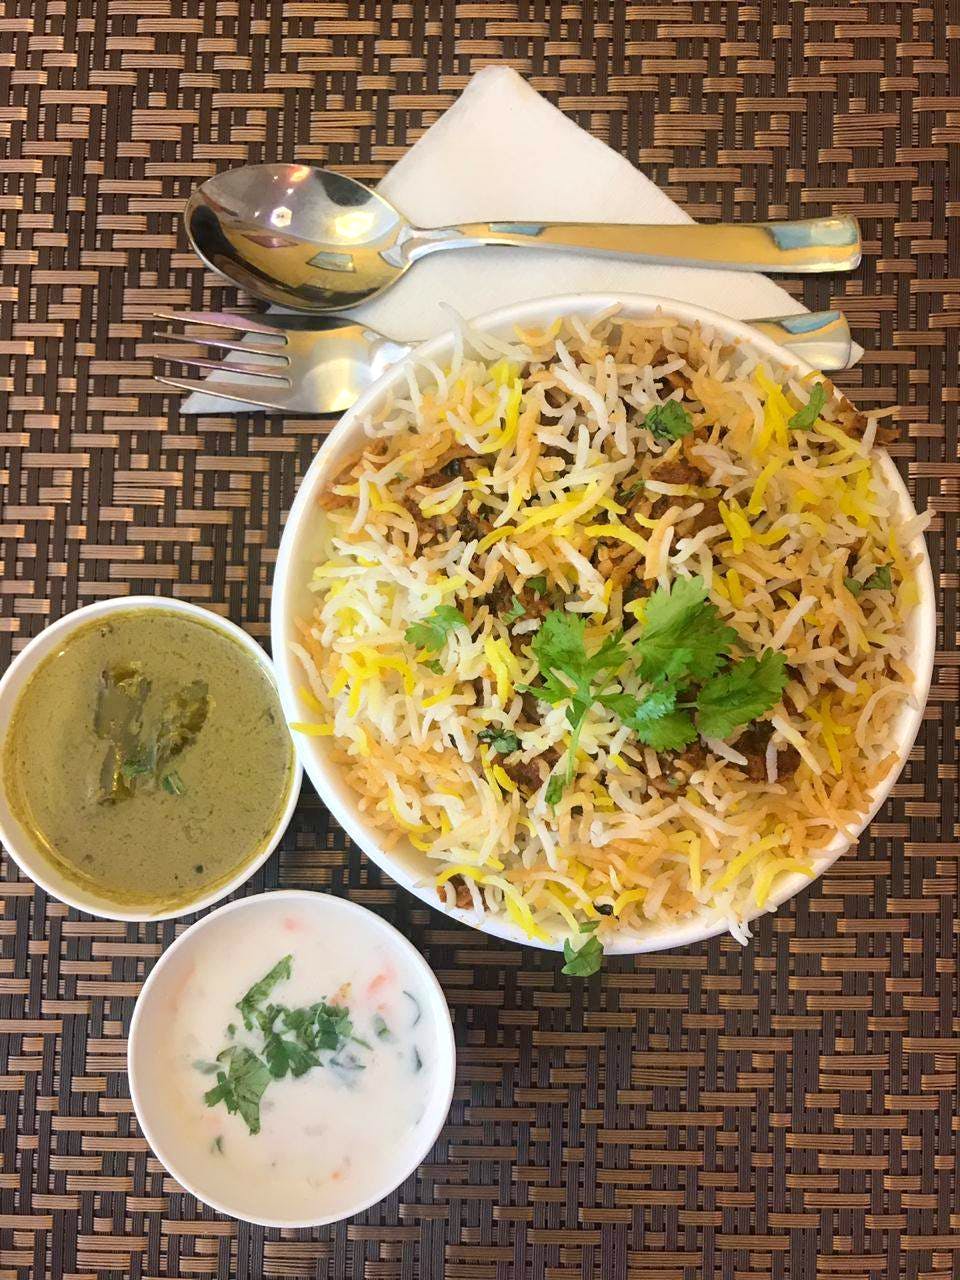 Dish,Food,Cuisine,Ingredient,Biryani,Recipe,Produce,Indian cuisine,Meal,Hyderabadi biriyani